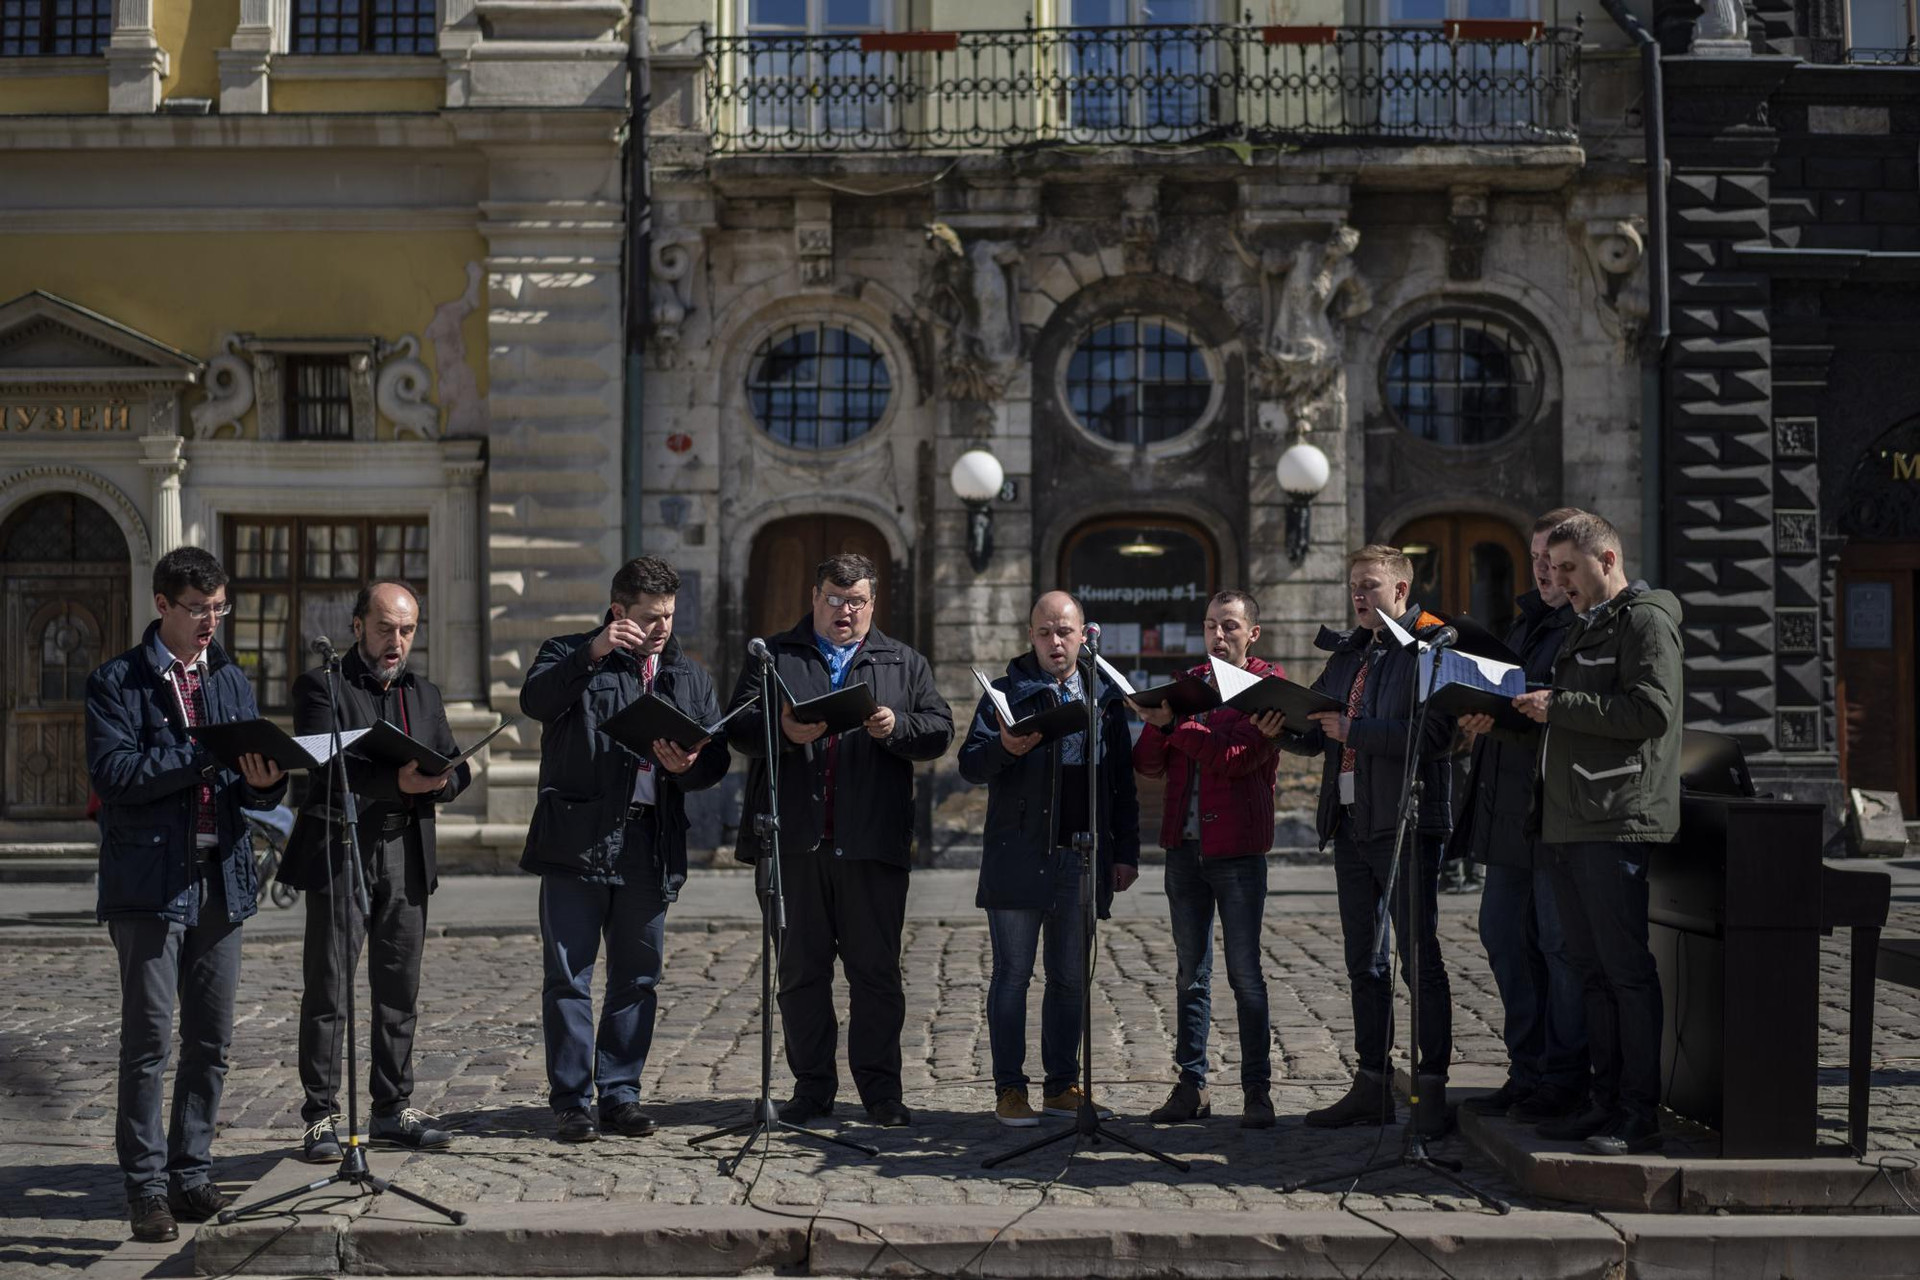 Dàn đồng ca hát trong buổi hòa nhạc do Lviv National Philharmonic tổ chức ở trung tâm thành phố Lviv, miền tây Ukraine. Ảnh: AP.